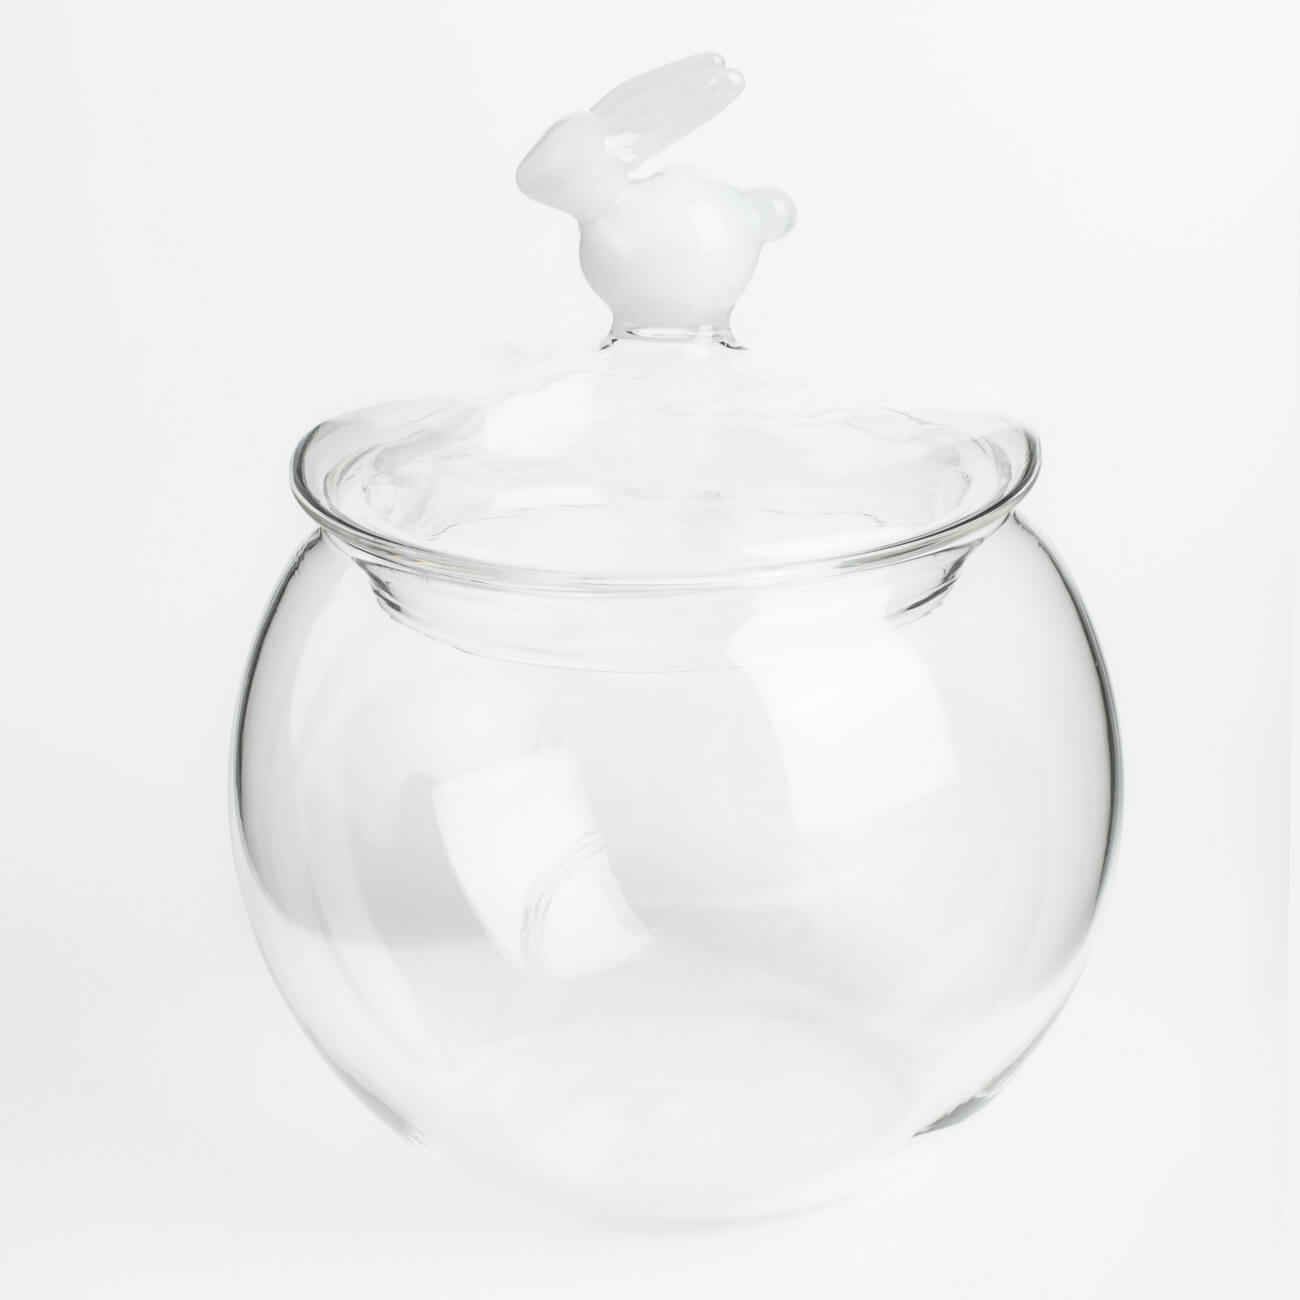 Конфетница, 10х14 см, 400 мл, с крышкой, стекло, Белый кролик, Clear figure конфетница сапожок с бомбошками